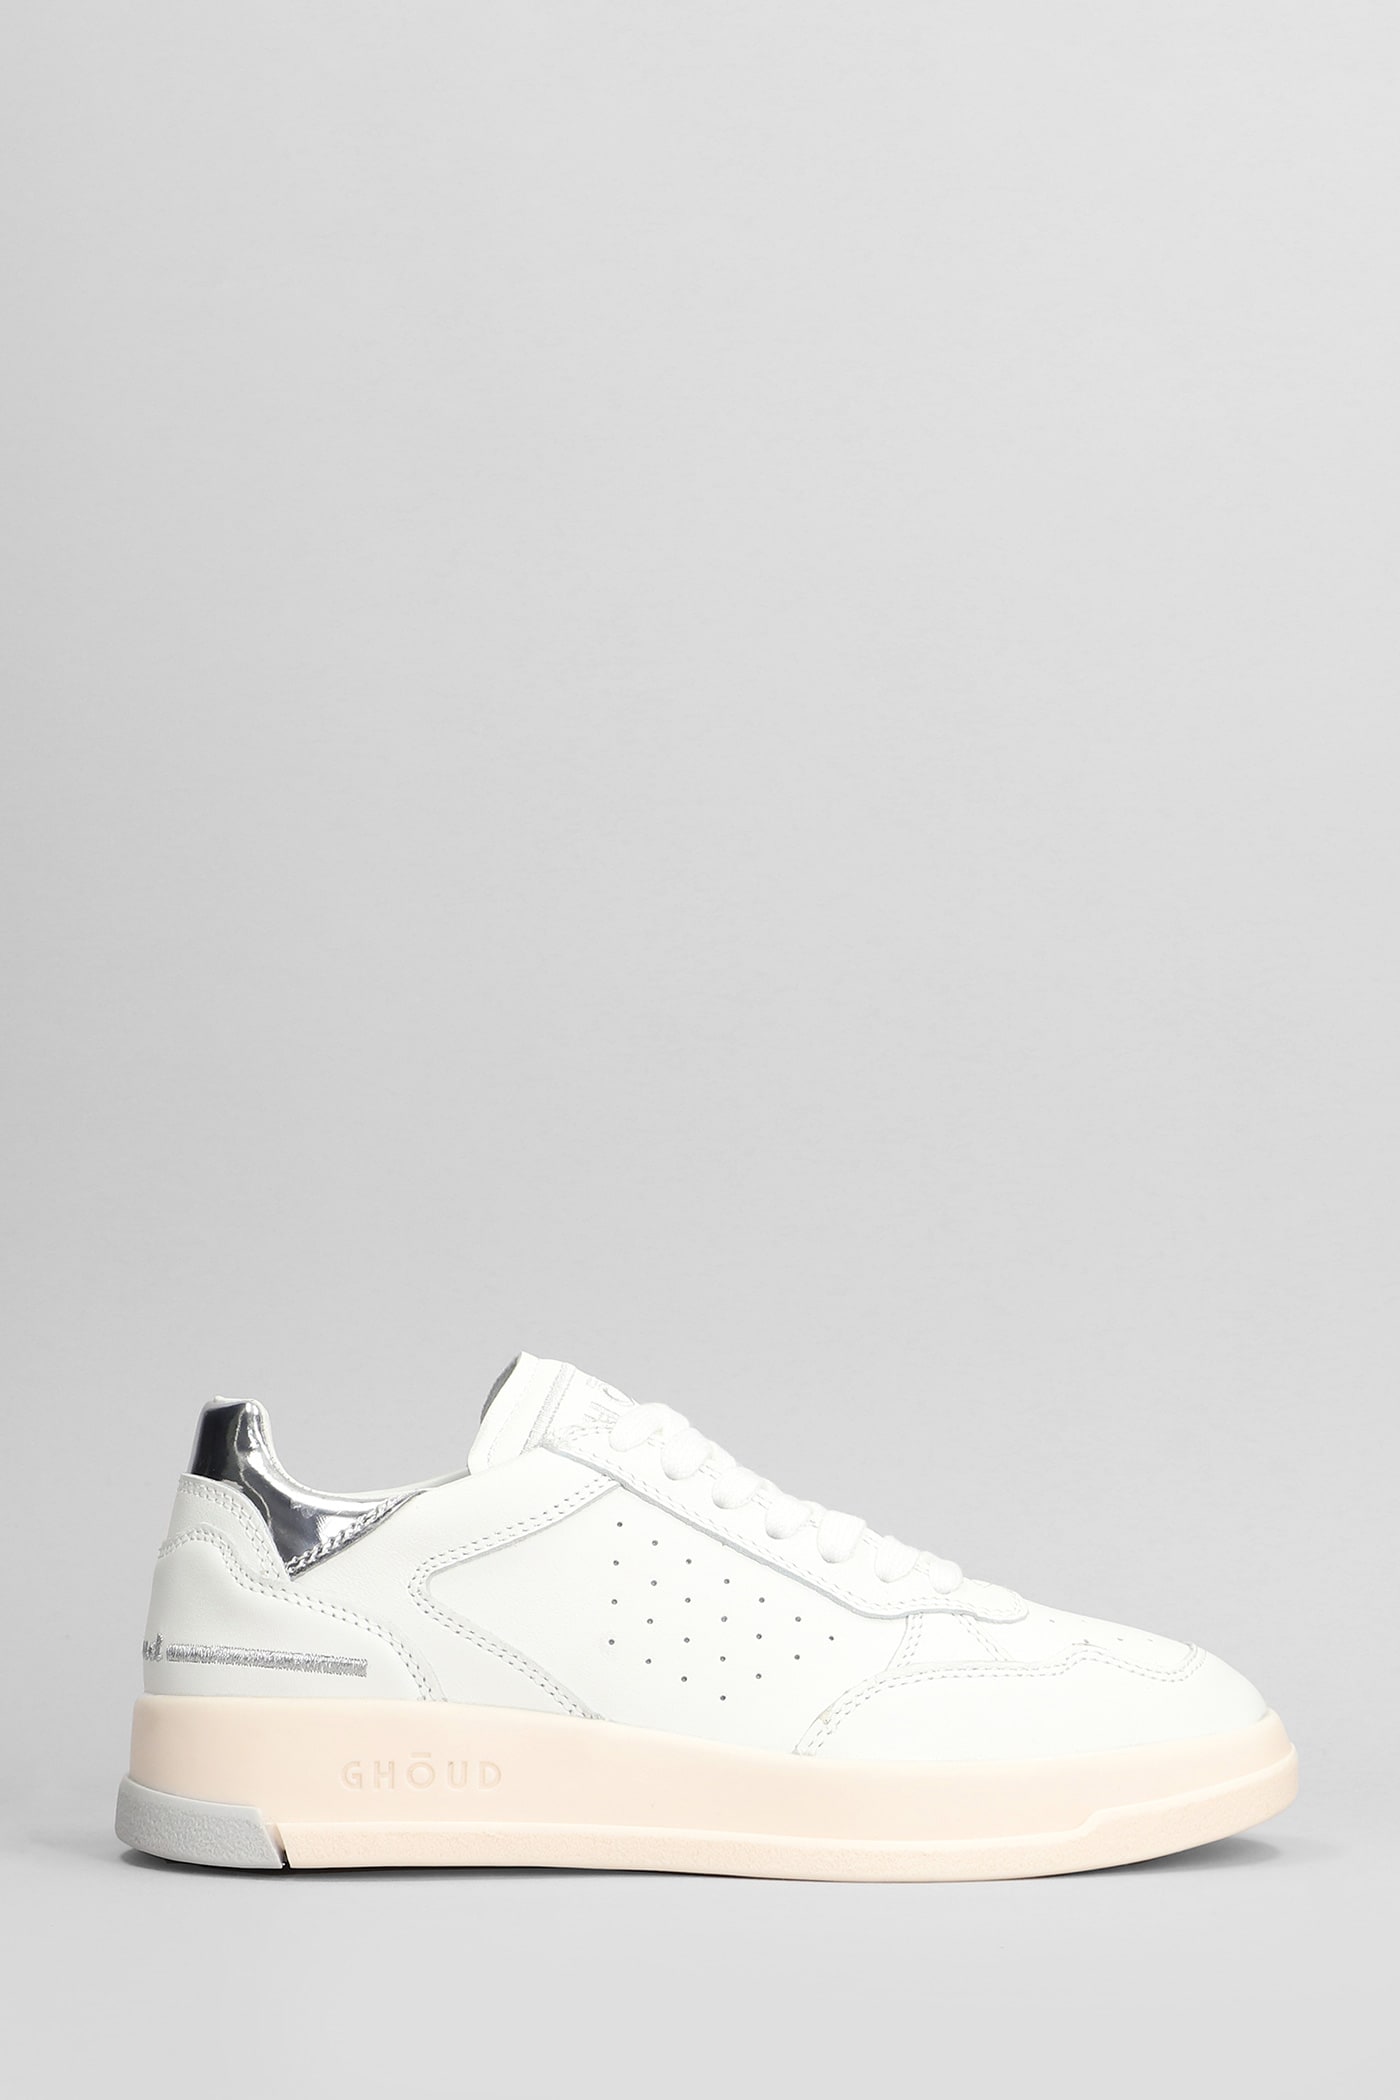 Ghoud Tweener Low Sneakers In White Leather In Gray